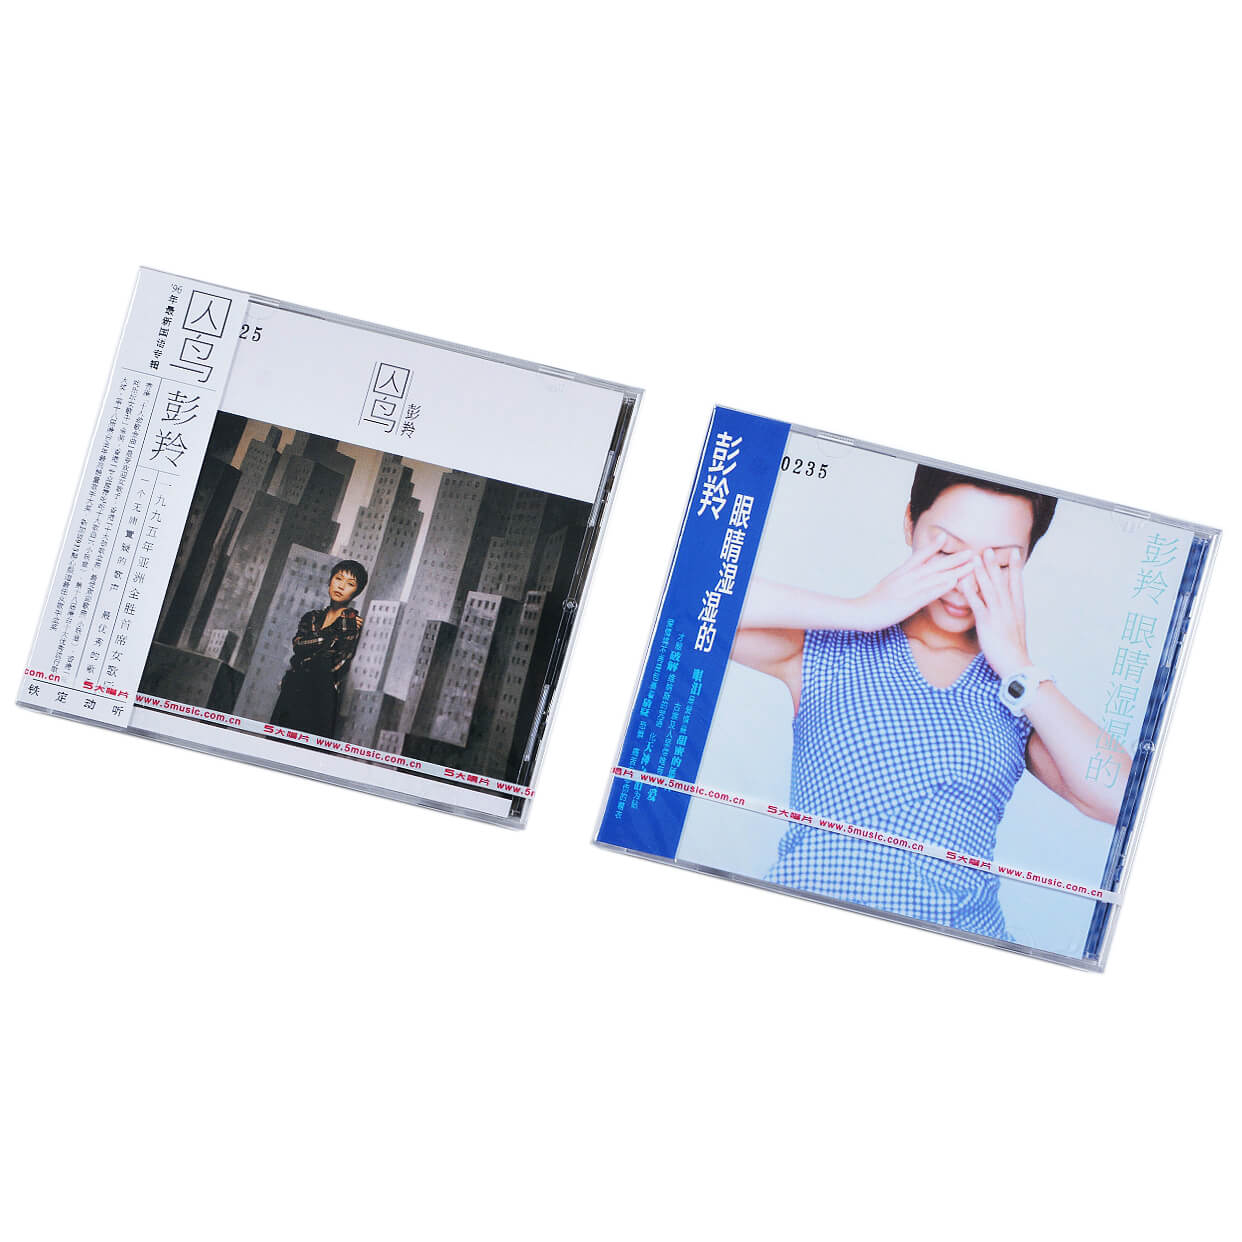 正版 彭羚2张专辑套装 囚鸟+眼睛湿湿的 唱片 2CD碟片+歌词本